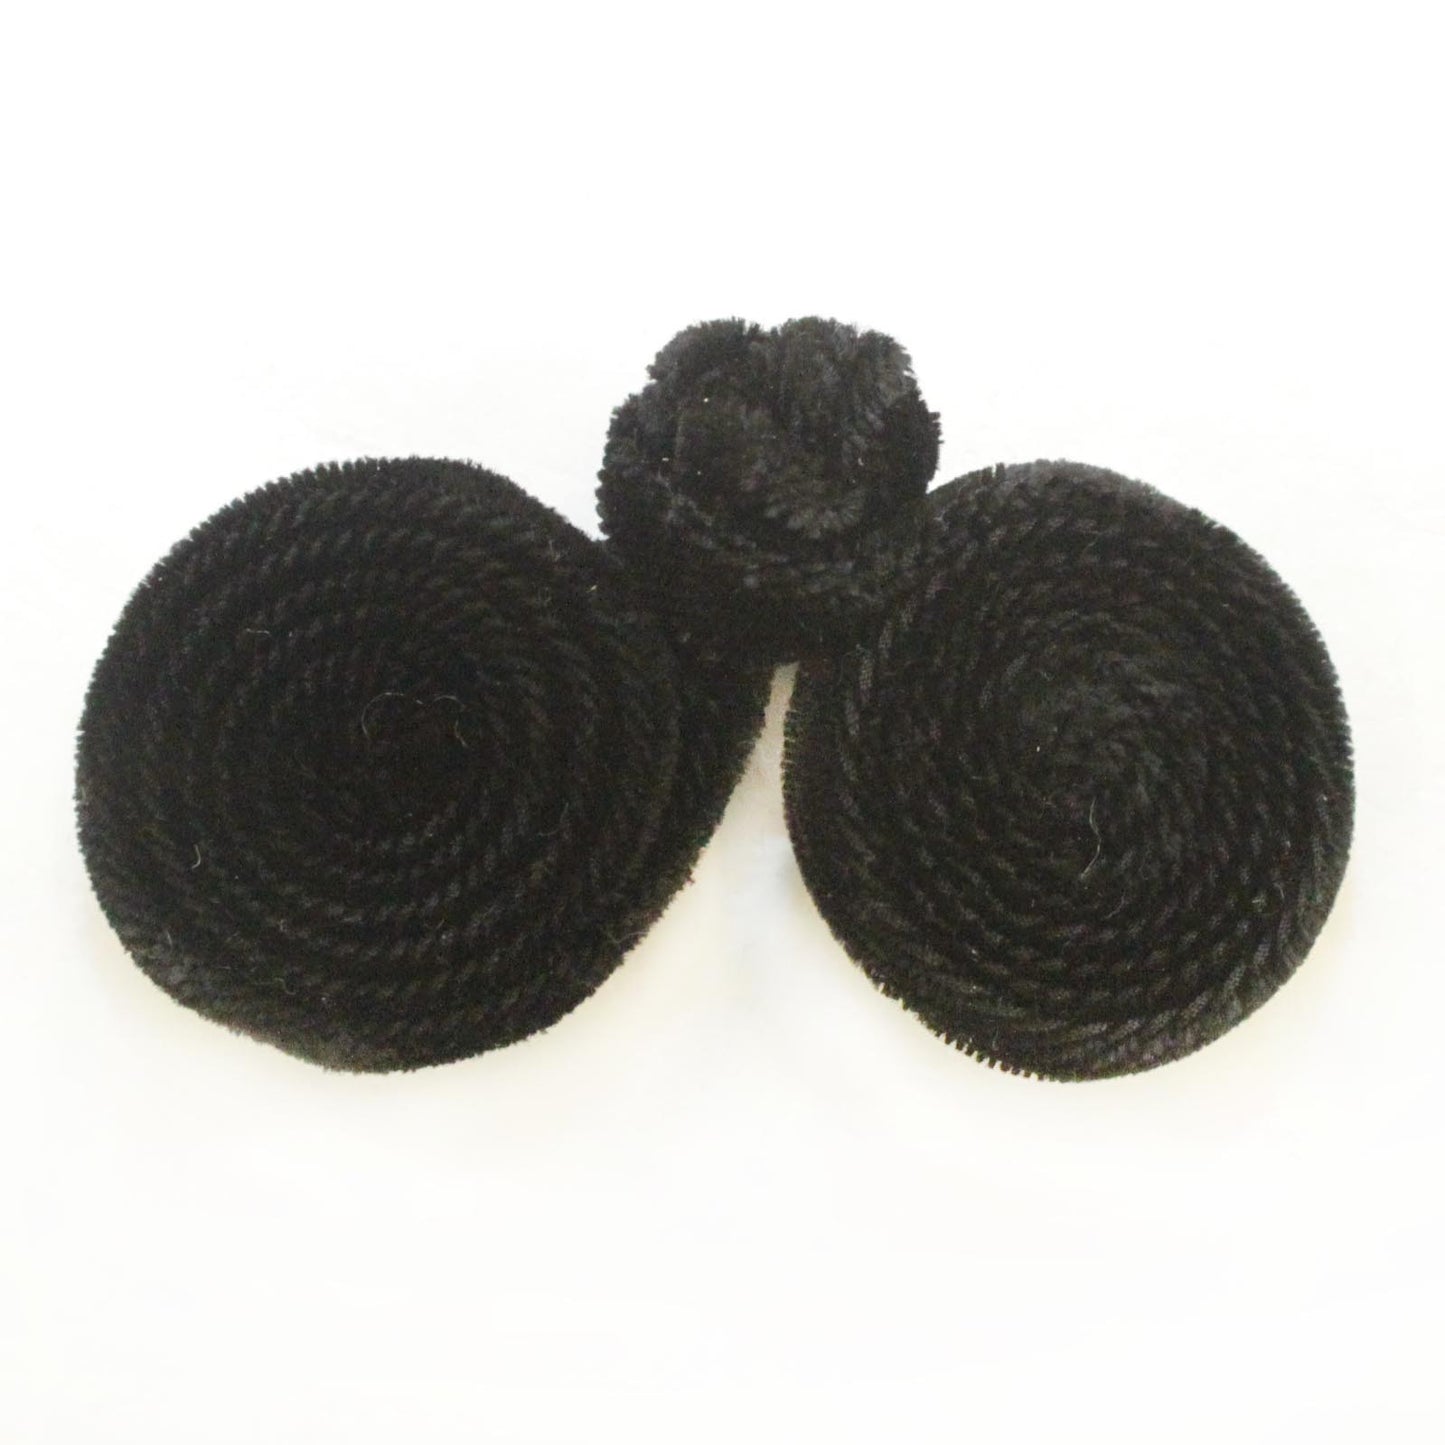 1-1/2" Black Velvet Coil Frog Knot Closure - 10 sets